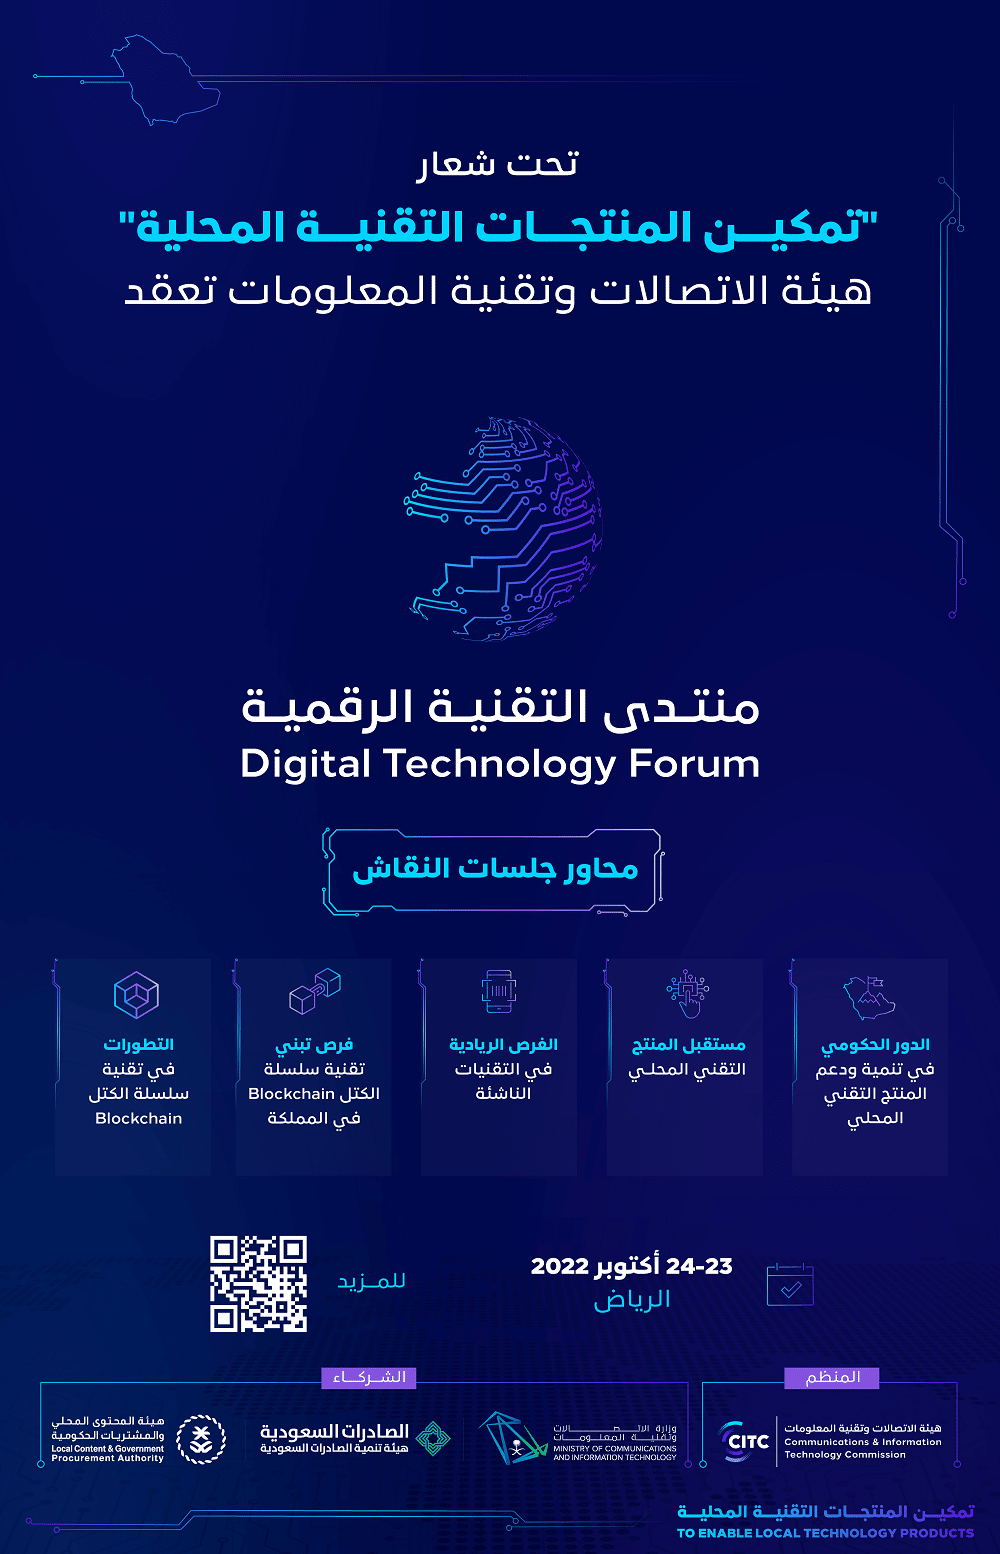 هيئة الاتصالات السعودية تعقد منتدى التقنية الرقمية 2022 يوم غد الأحد